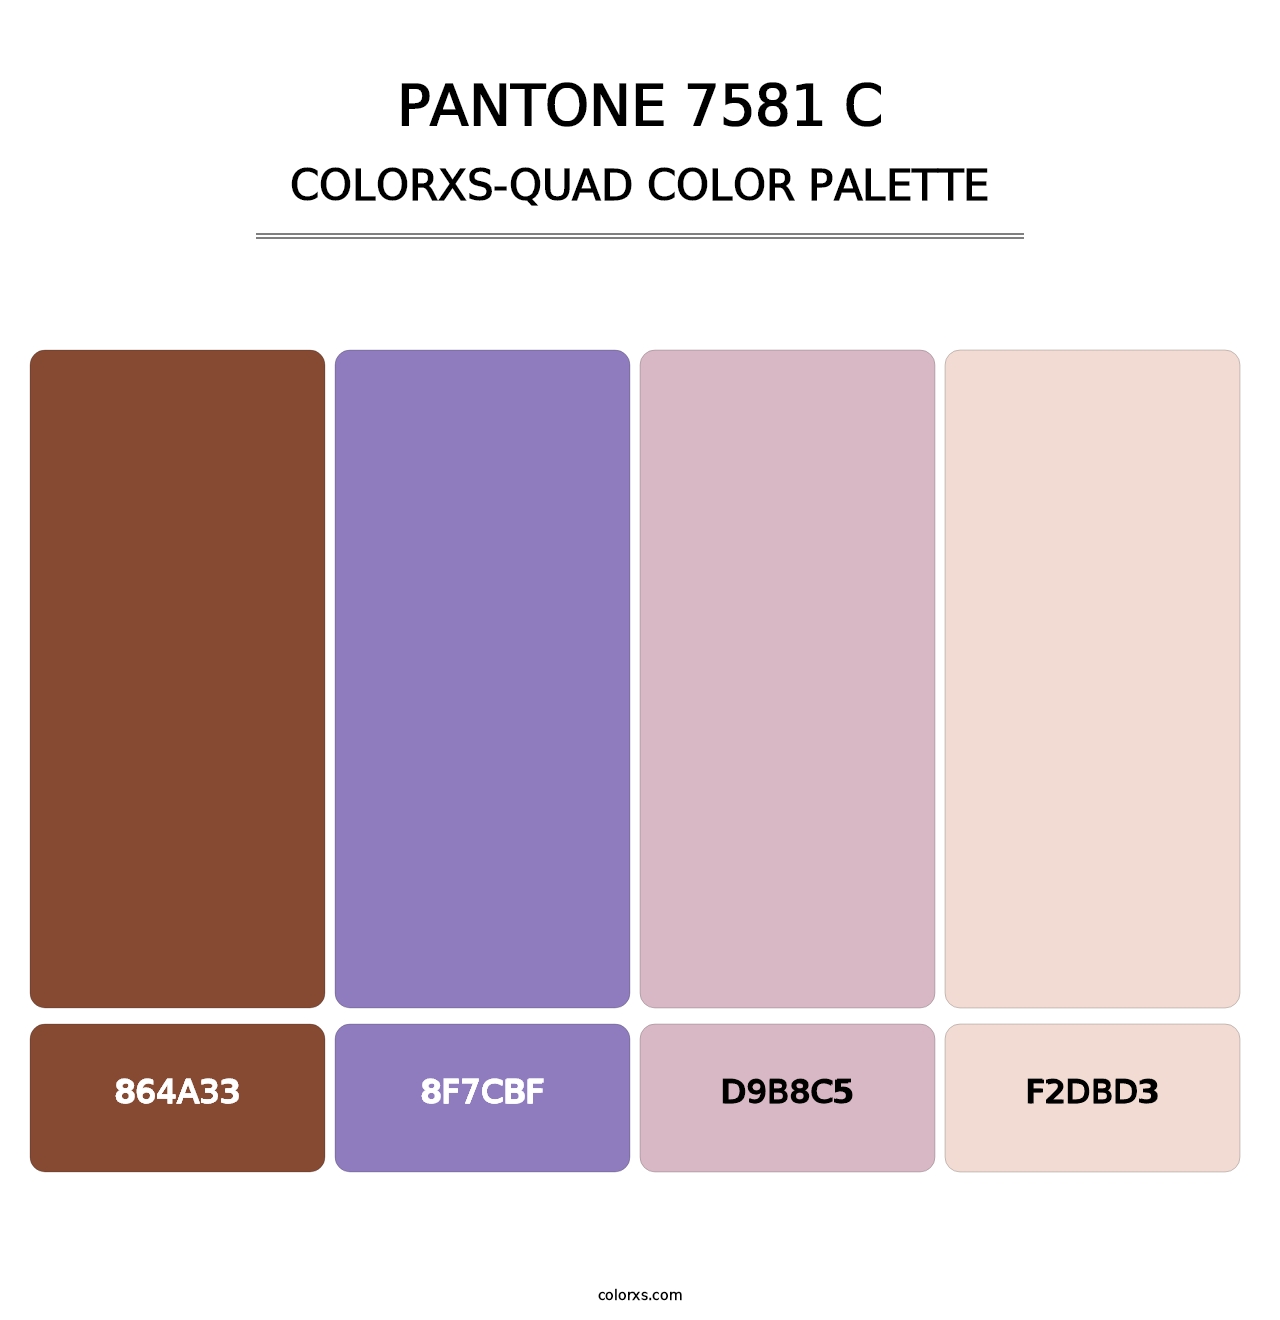 PANTONE 7581 C - Colorxs Quad Palette